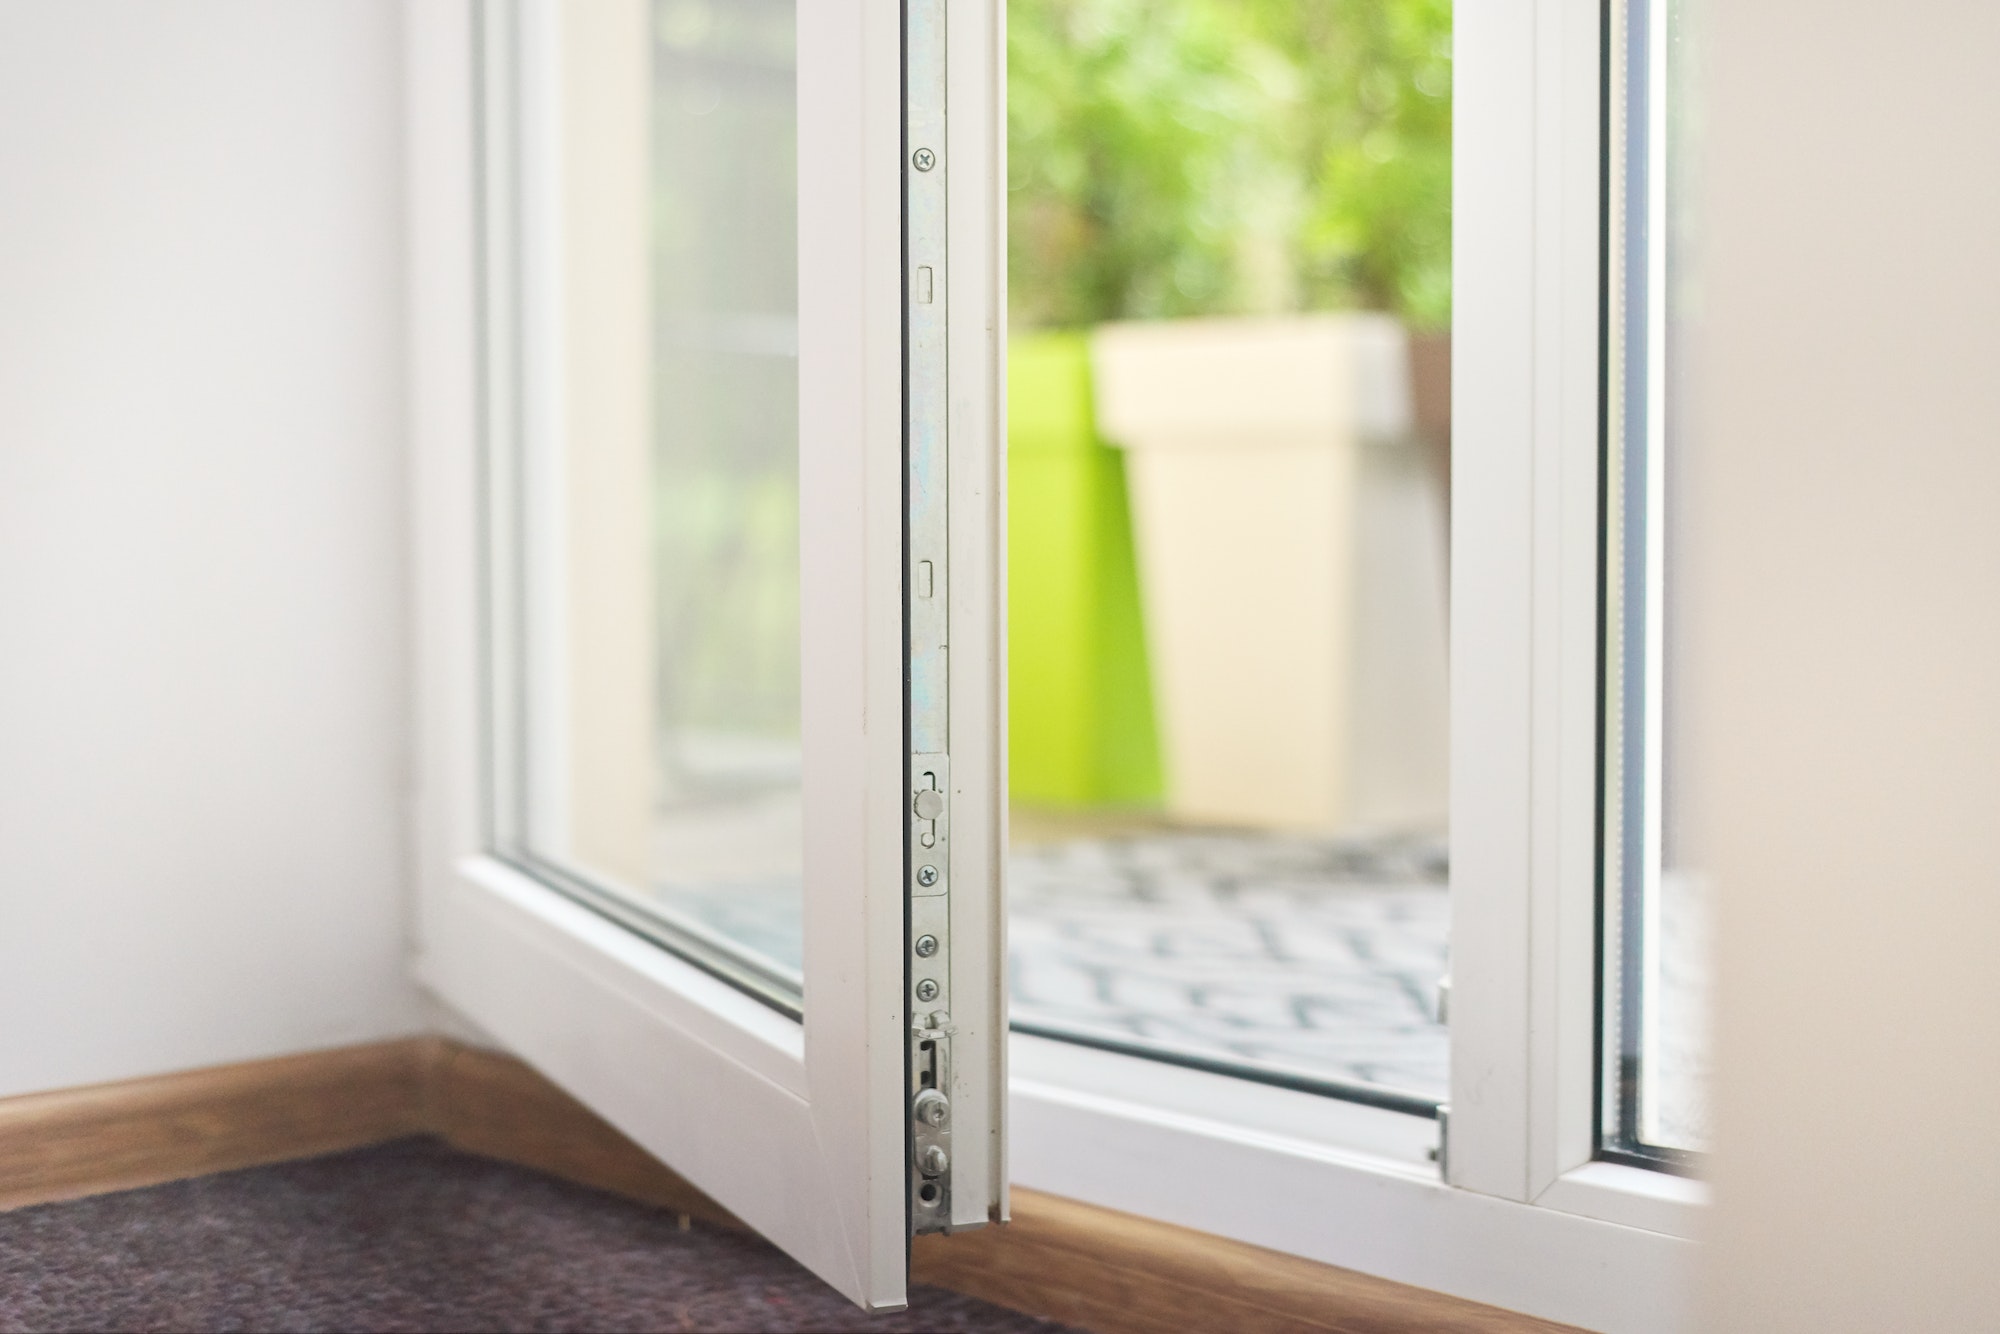 Porte fenêtre PVC double vitrage. fournisseur et installateur de portes, fenêtres et volets en PVC, aluminium ou bois.